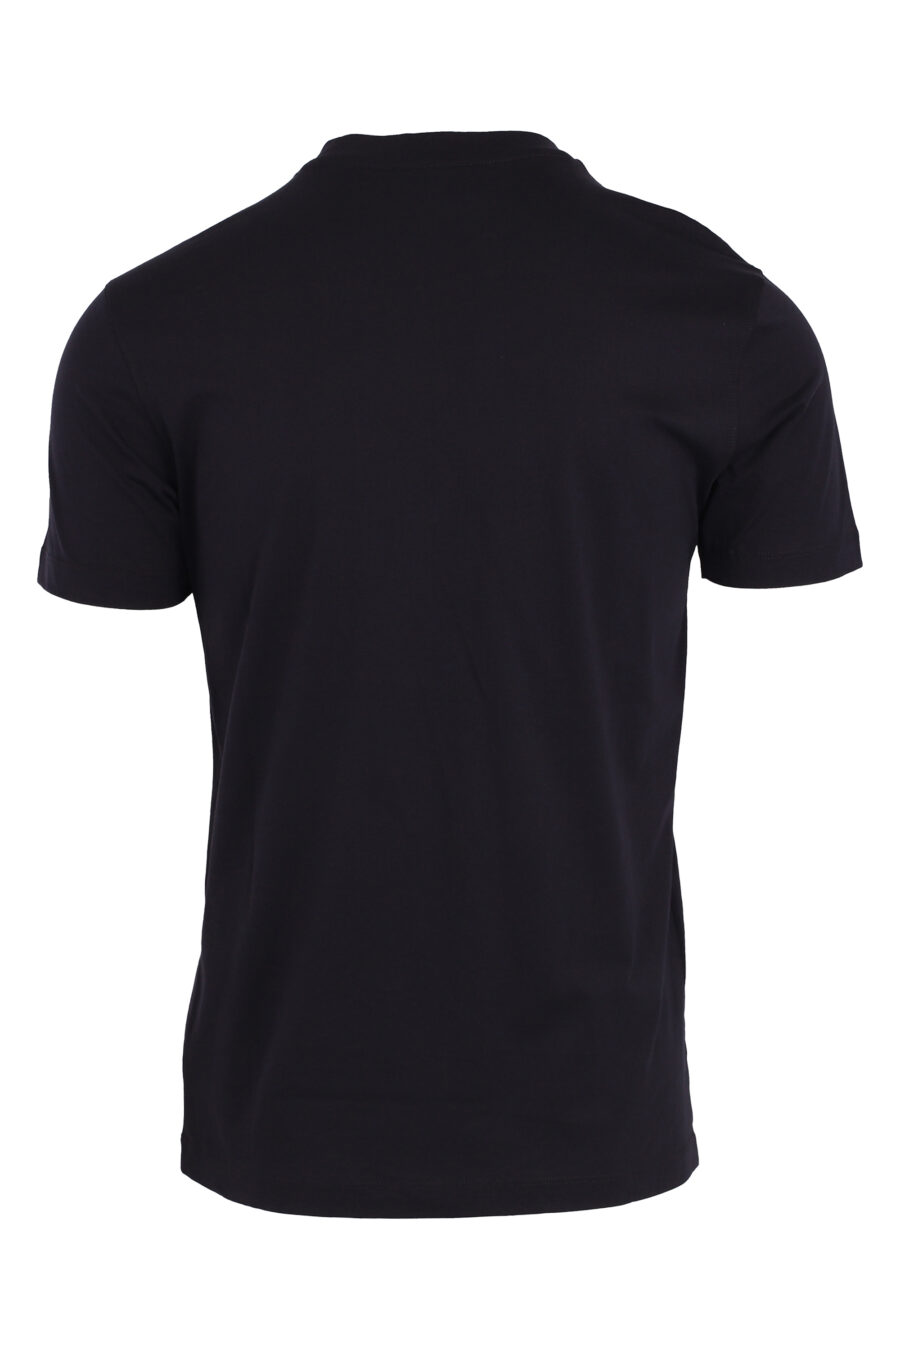 T-shirt azul escura com maxilogue de veludo - IMG 4745